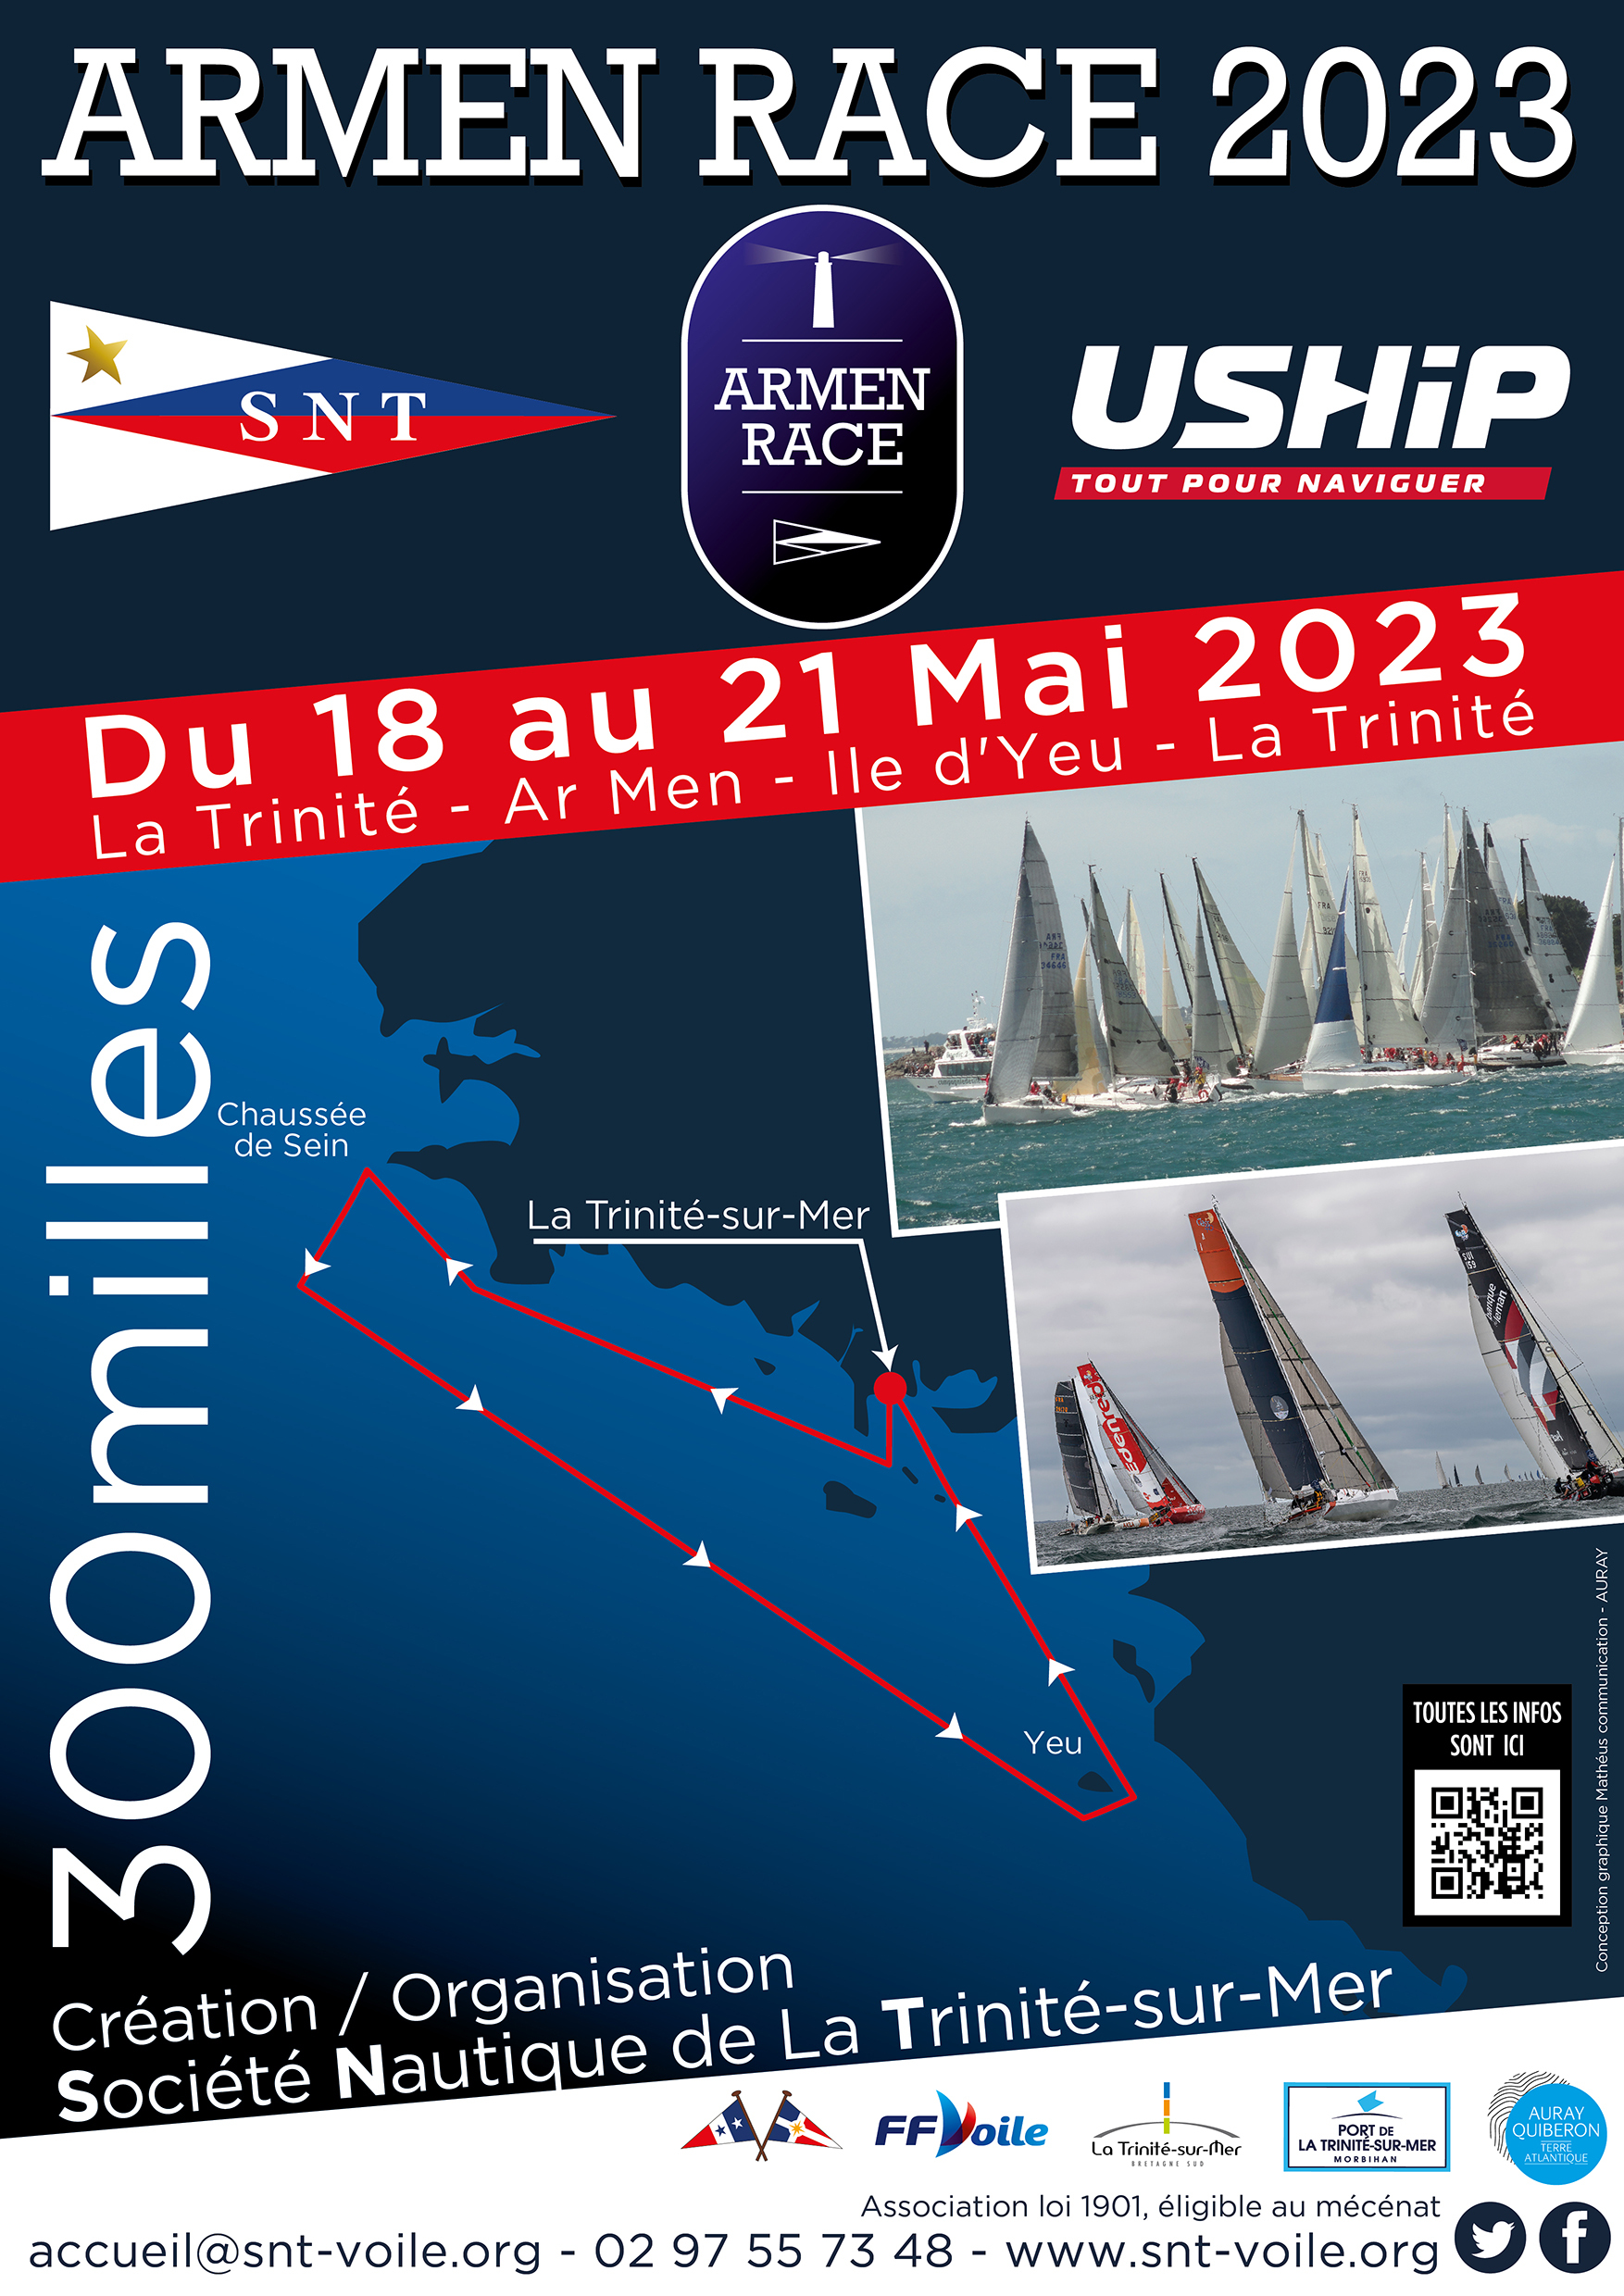 SNT - Affiche A3 - Armen race 2023-03 - LD